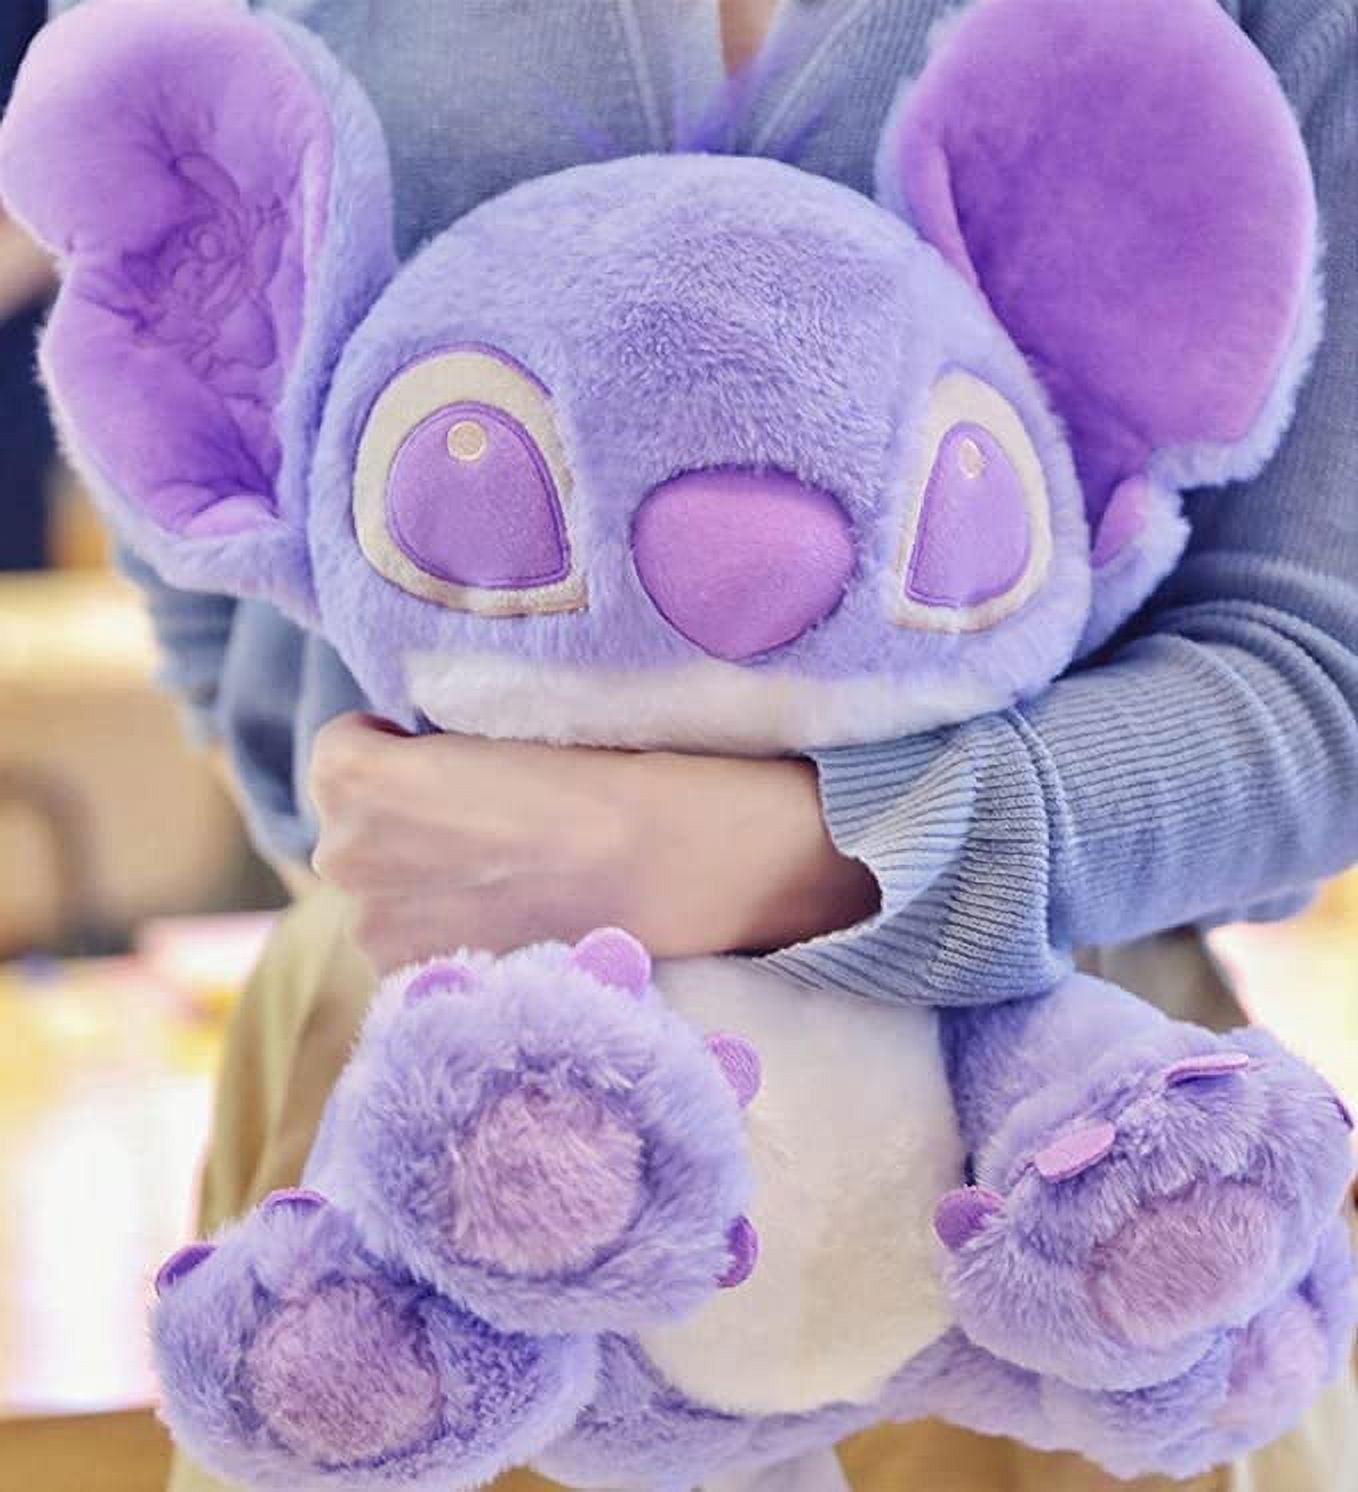 Stitch Plush Toys, 11.8 inch Purple Lilo & Stitch Stuffed Dolls, Purple  Stitch Gifts, Soft and Huggable, Stuffed Pillow Buddy, Stitch Gifts for Fans